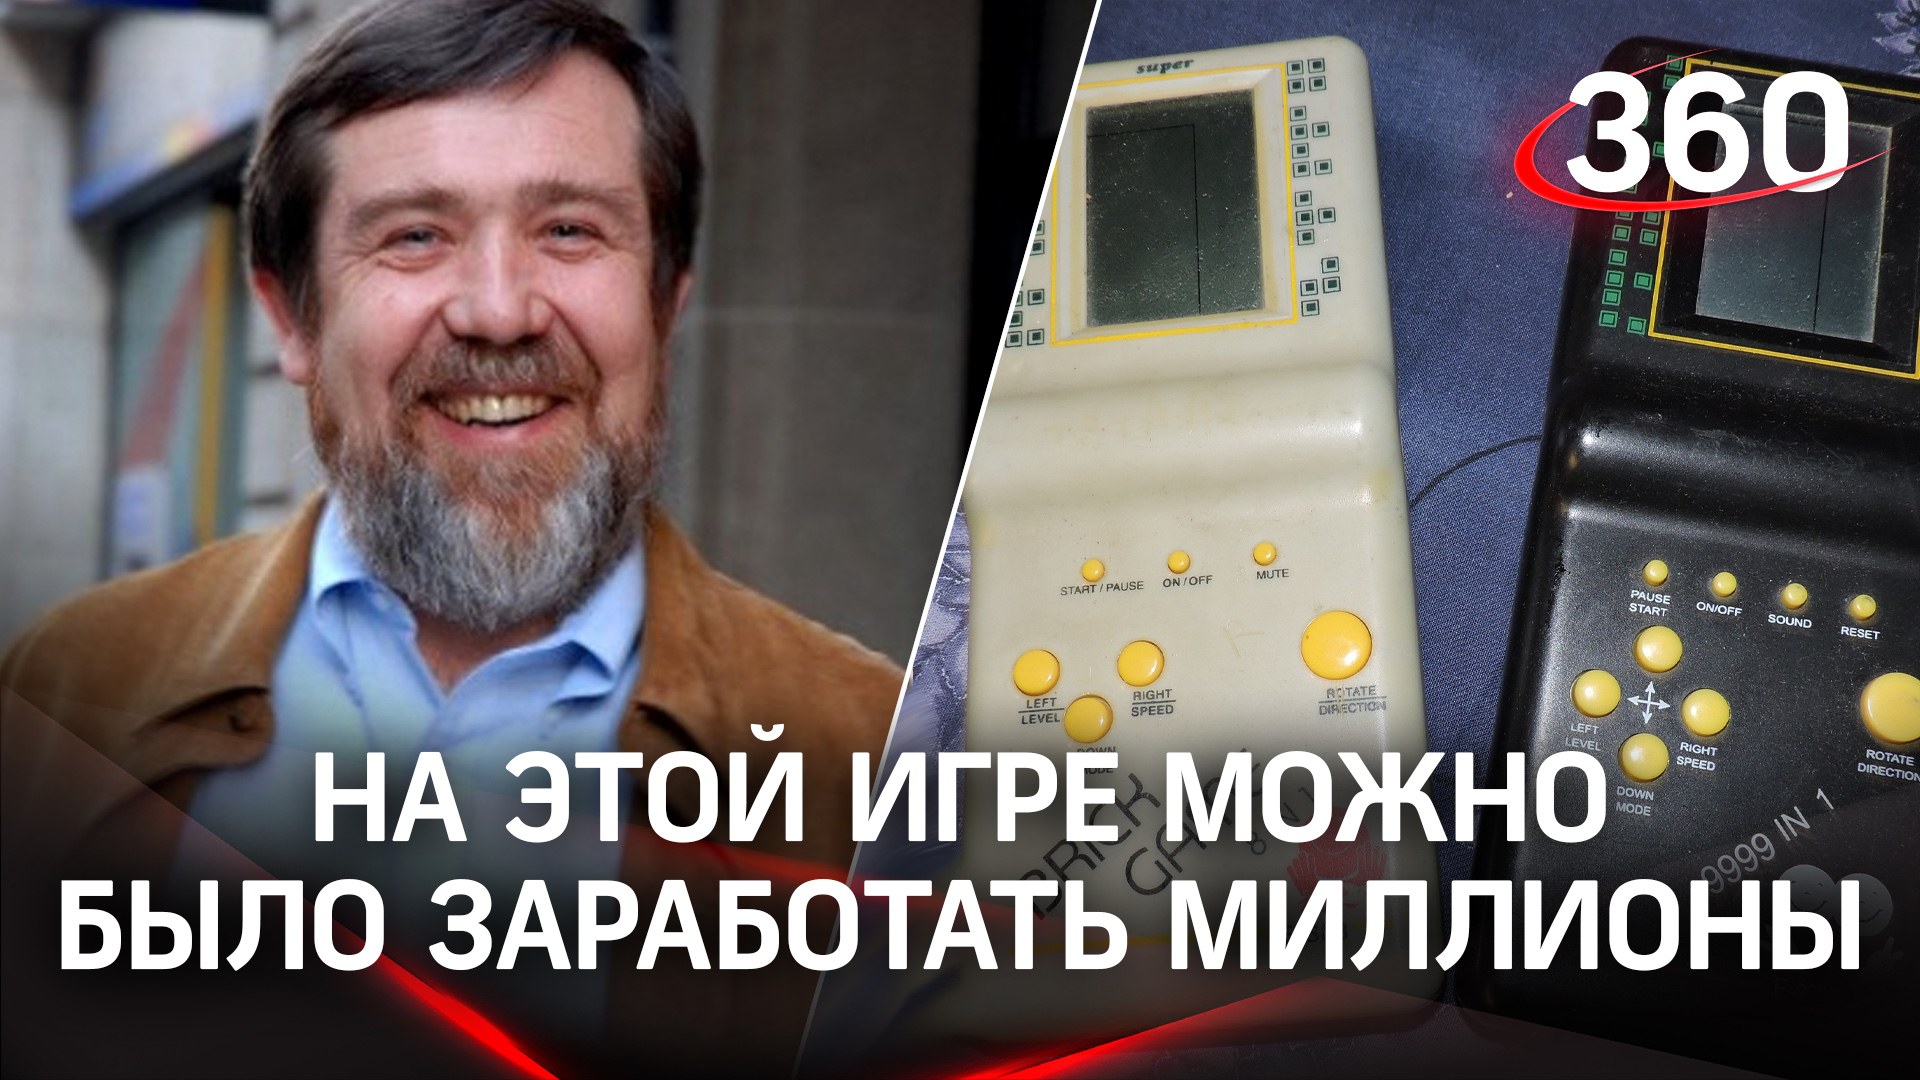 Самую известную игру создал советский инженер Алексей Пажитнов